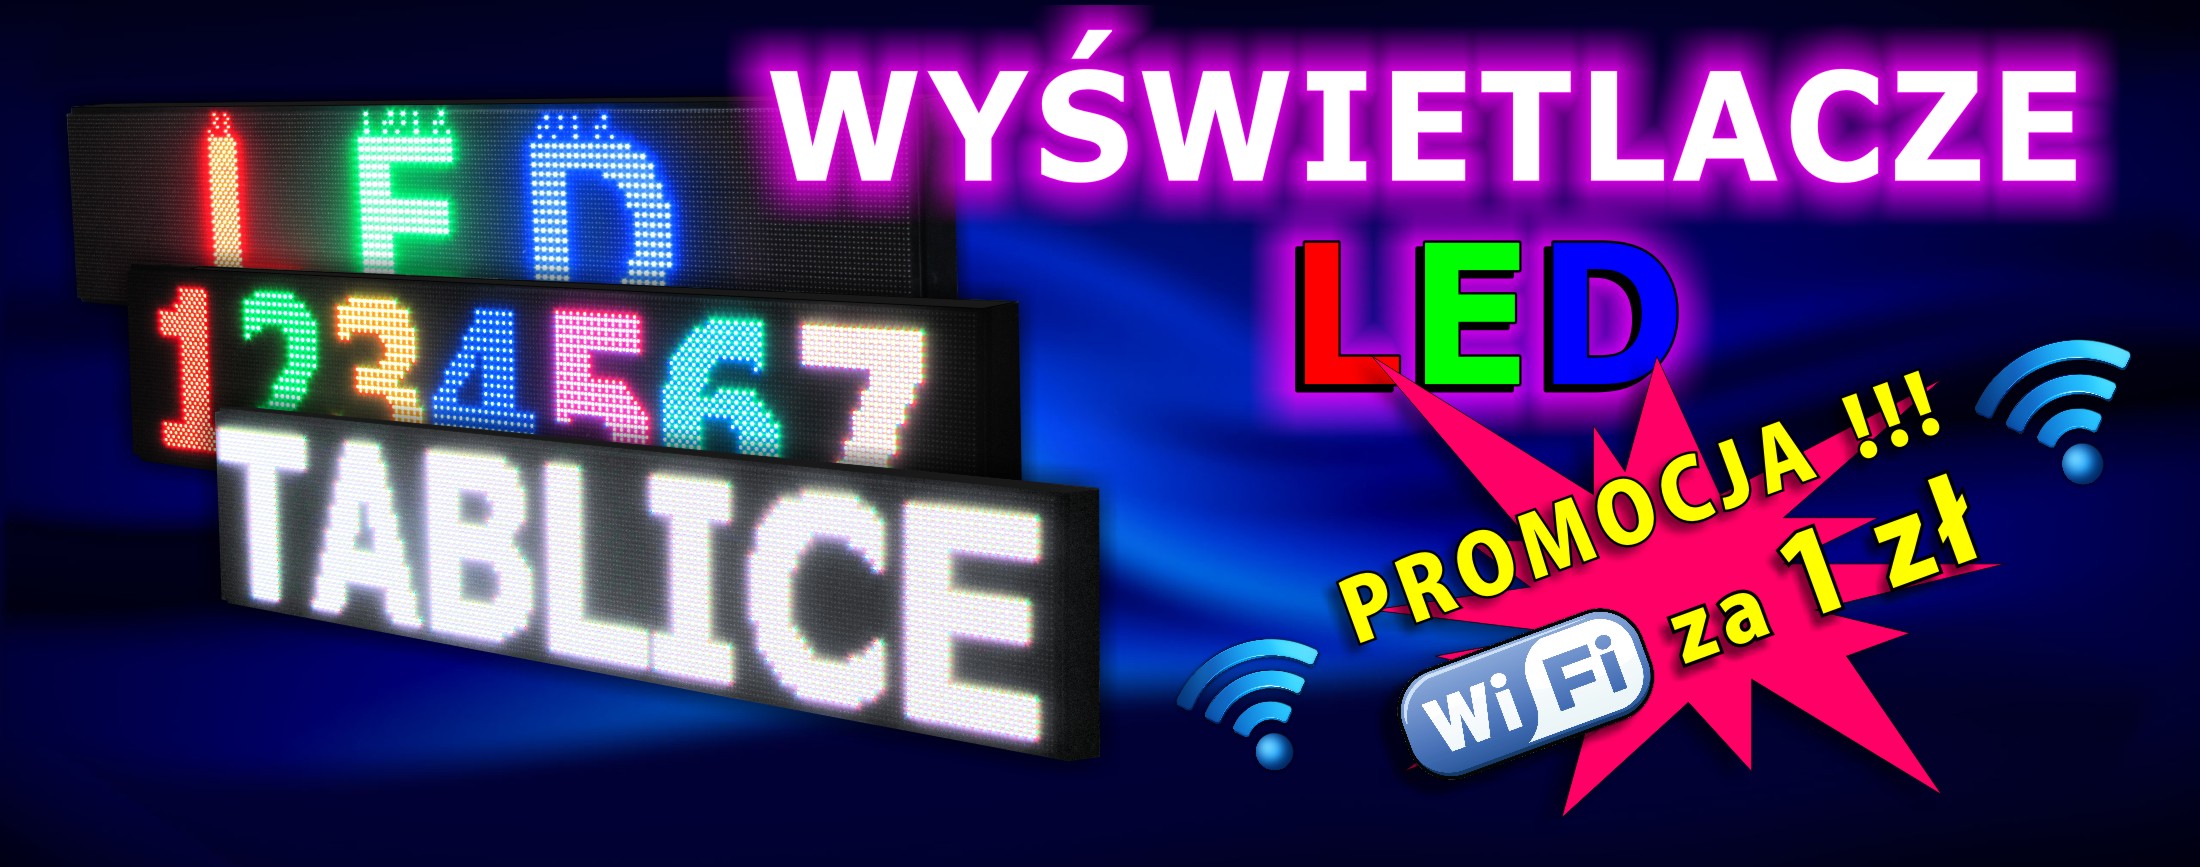 Wy__wietlacze_LED_2.jpg